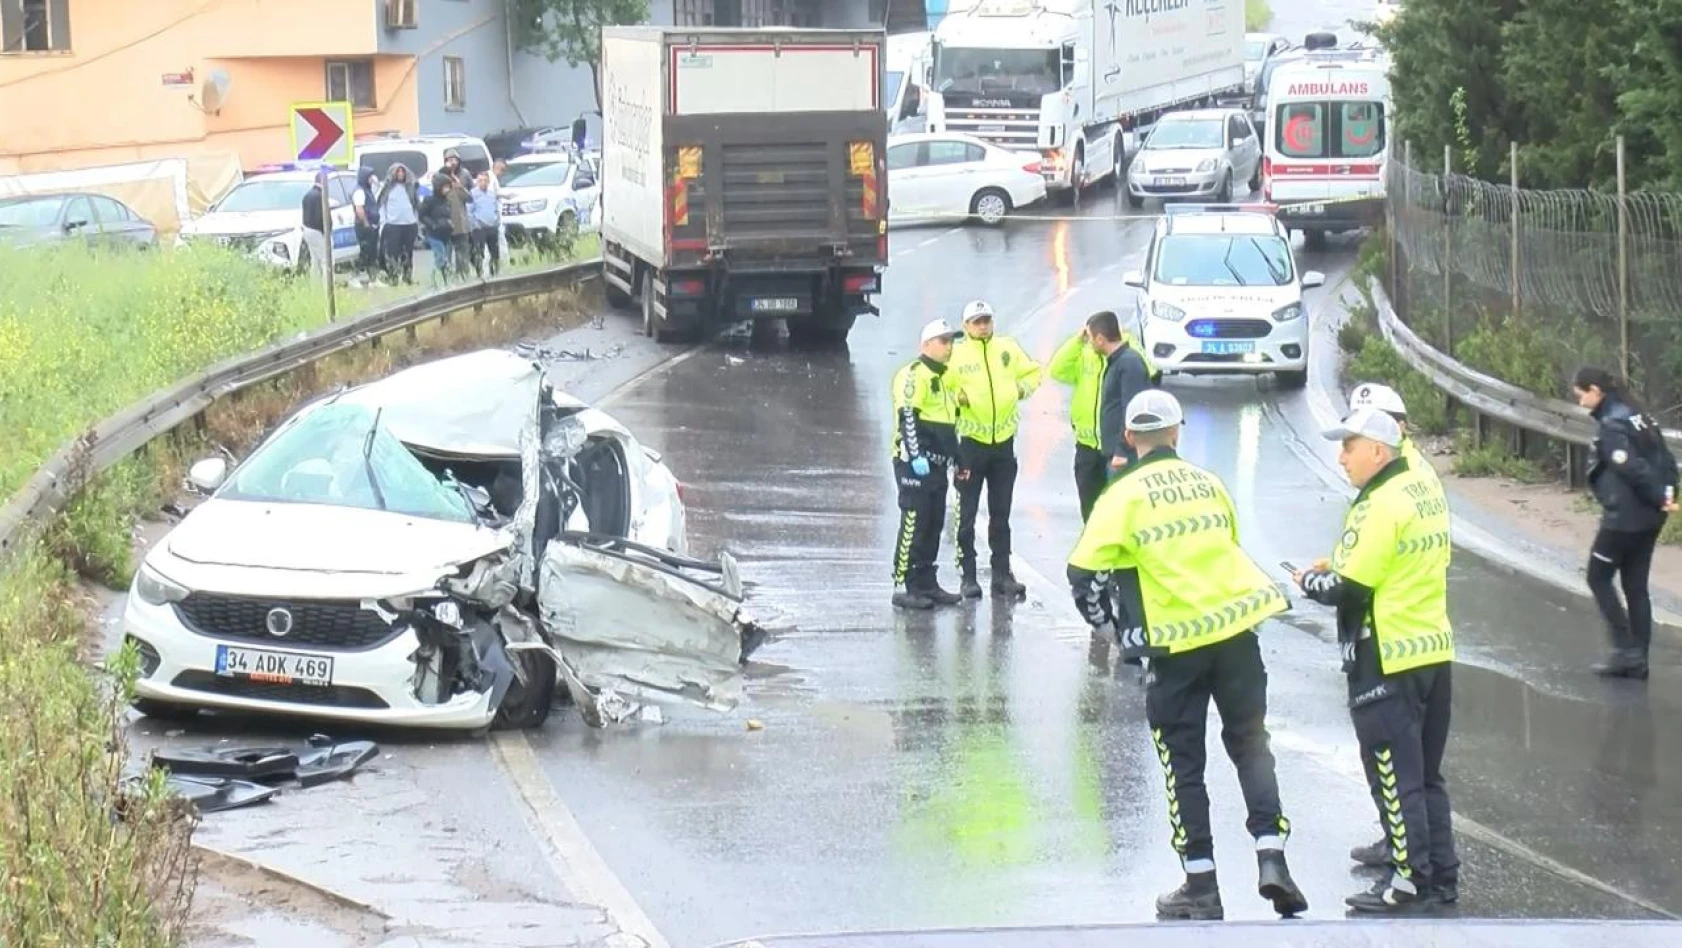 Sultanbeyli'de kamyon ve otomobil çarpıştı: 2 ölü, 4 yaralı